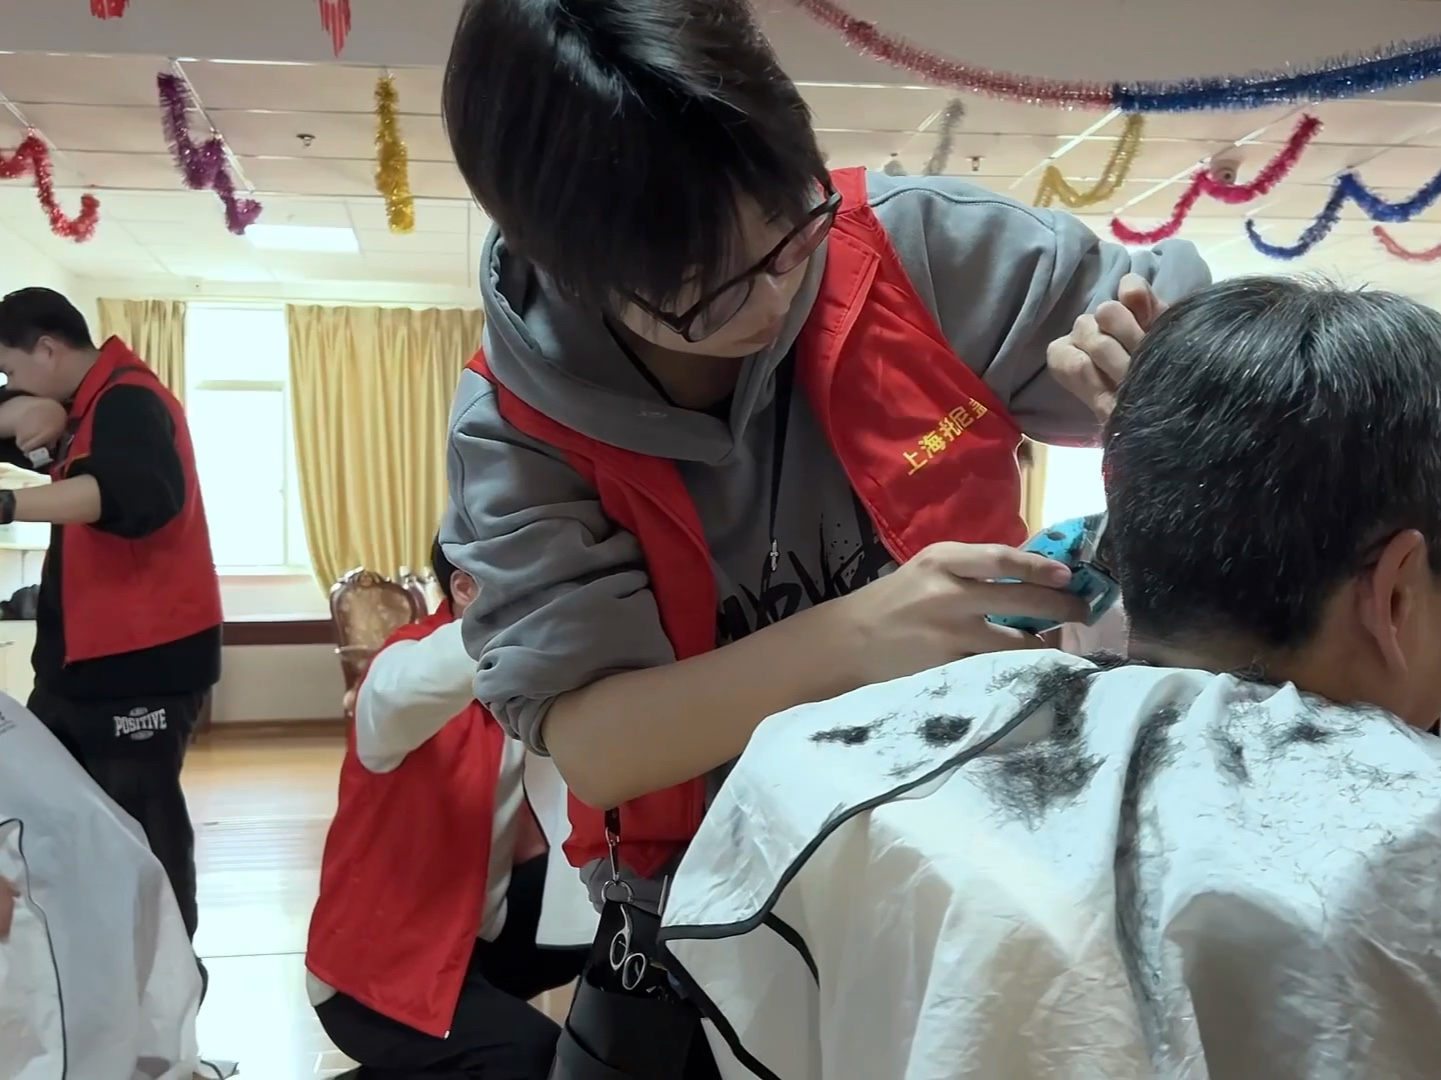 上海托尼盖美发学校学员爱心义剪,为社会做些力所能及的爱心活动